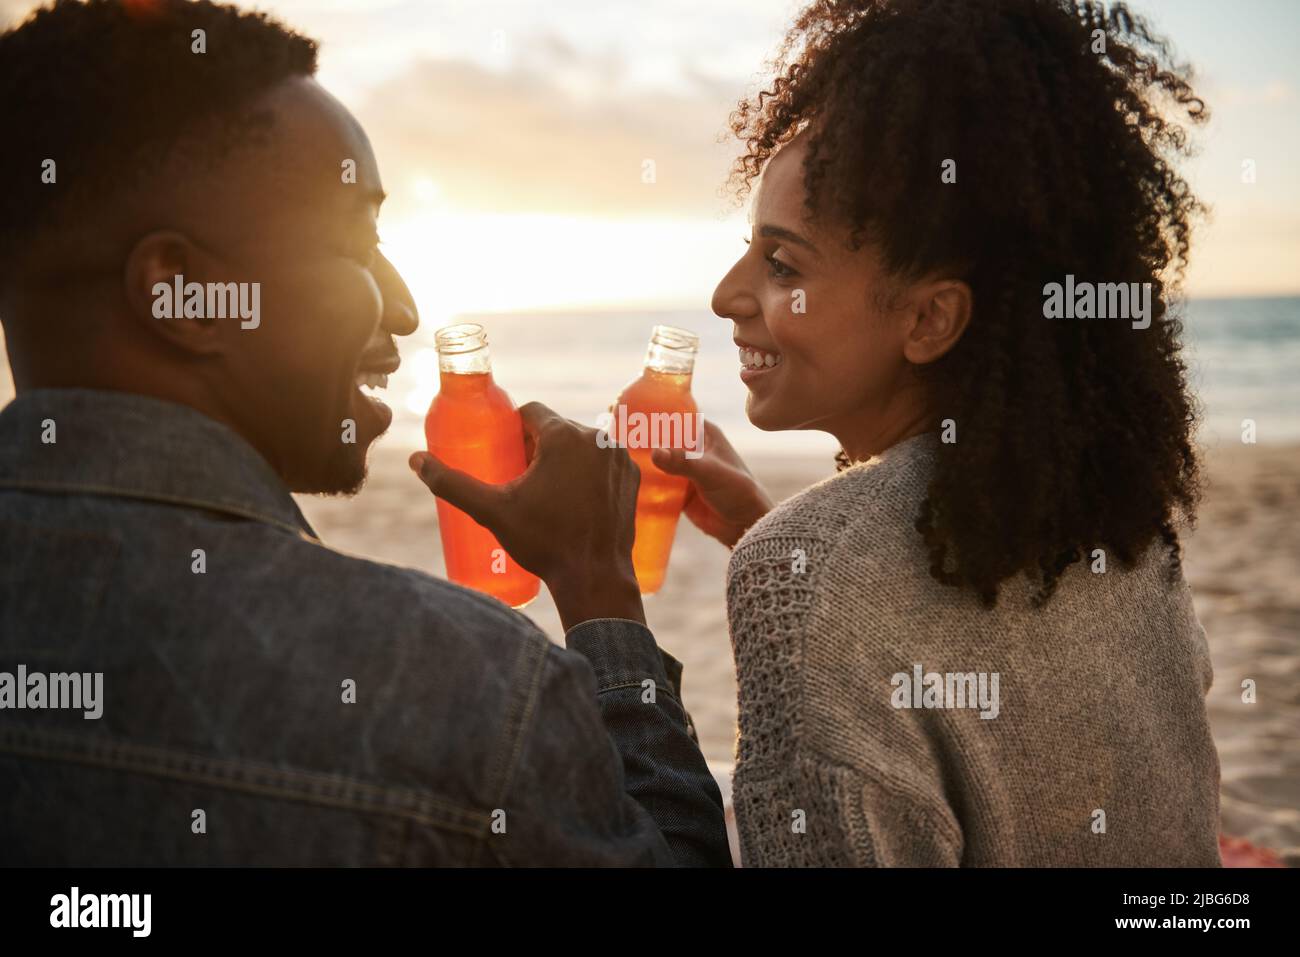 Un jeune couple multiethnique souriant boit du jus sur une plage au coucher du soleil Banque D'Images